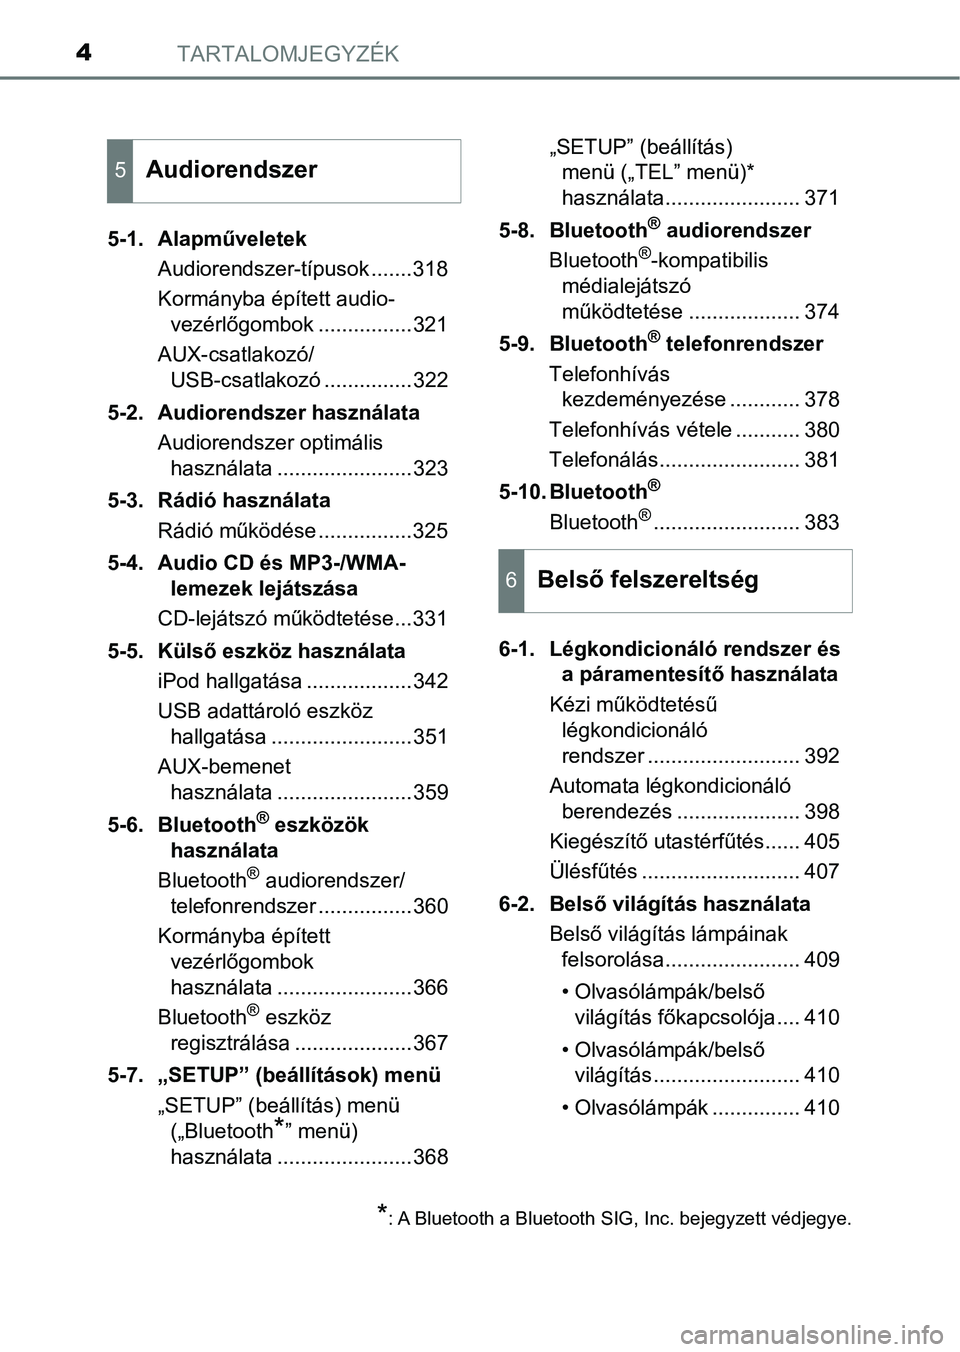 TOYOTA AVENSIS 2018  Kezelési útmutató (in Hungarian) TARTALOMJEGYZÉK4
5-1. AlapműveletekAudiorendszer-típusok .......318
Kormányba épített audio-vezérlőgombok ................321
AUX-csatlakozó/ USB-csatlakozó ...............322
5-2. Audiorend